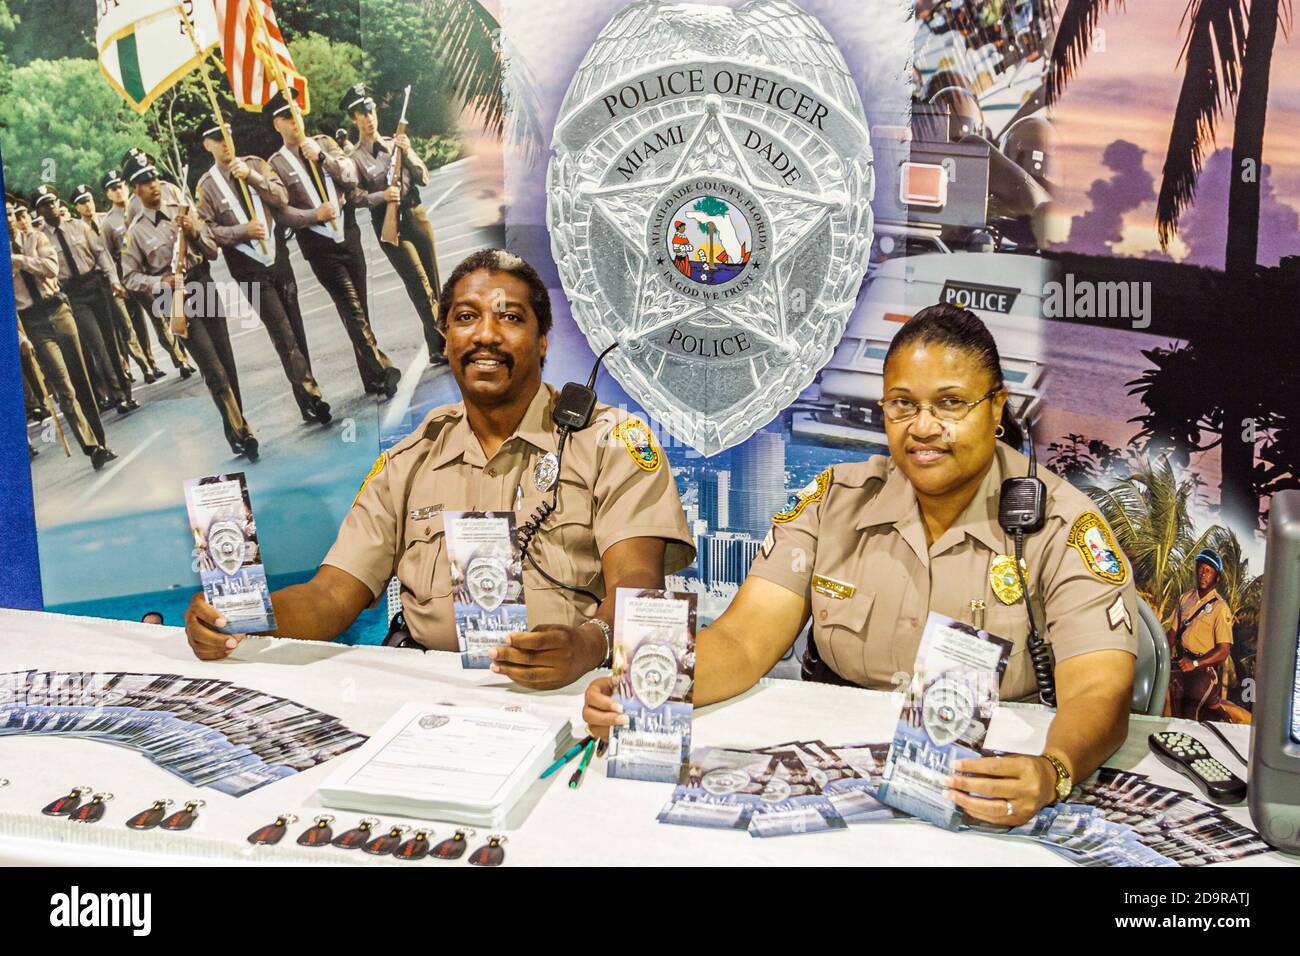 Miami Florida,Dade County Fair & Exposition,annual event youth programs exhibits Miami-Dade Police Department,recruiters recruiting,policeman policewo Stock Photo